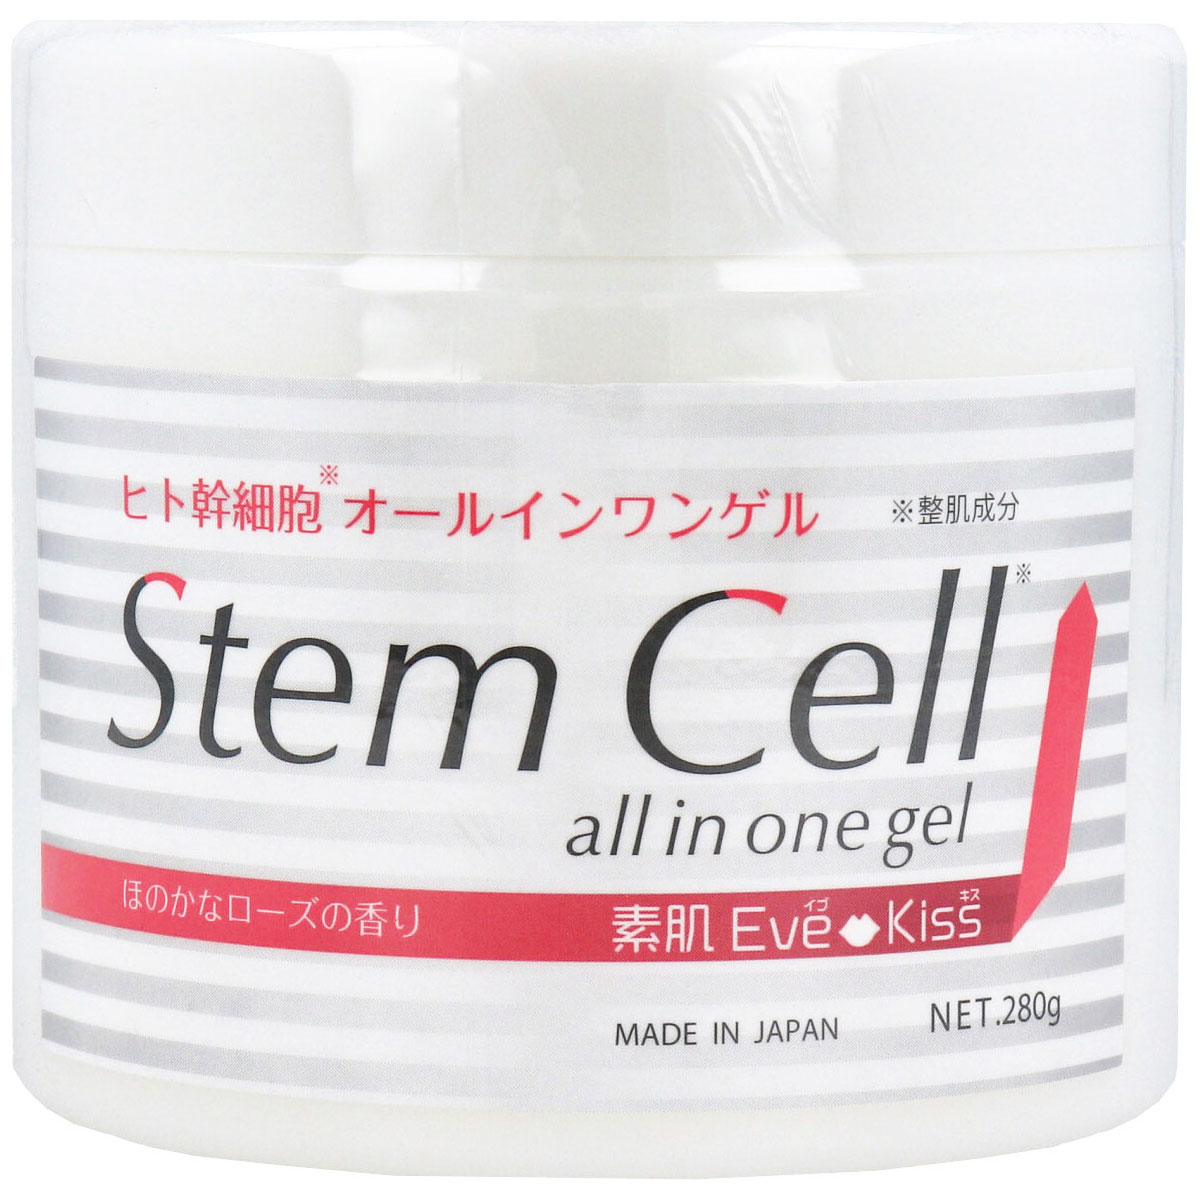 ヒト幹細胞オールインワンゲル Stem Cell STオールインワンゲル ほのかなローズ 280g